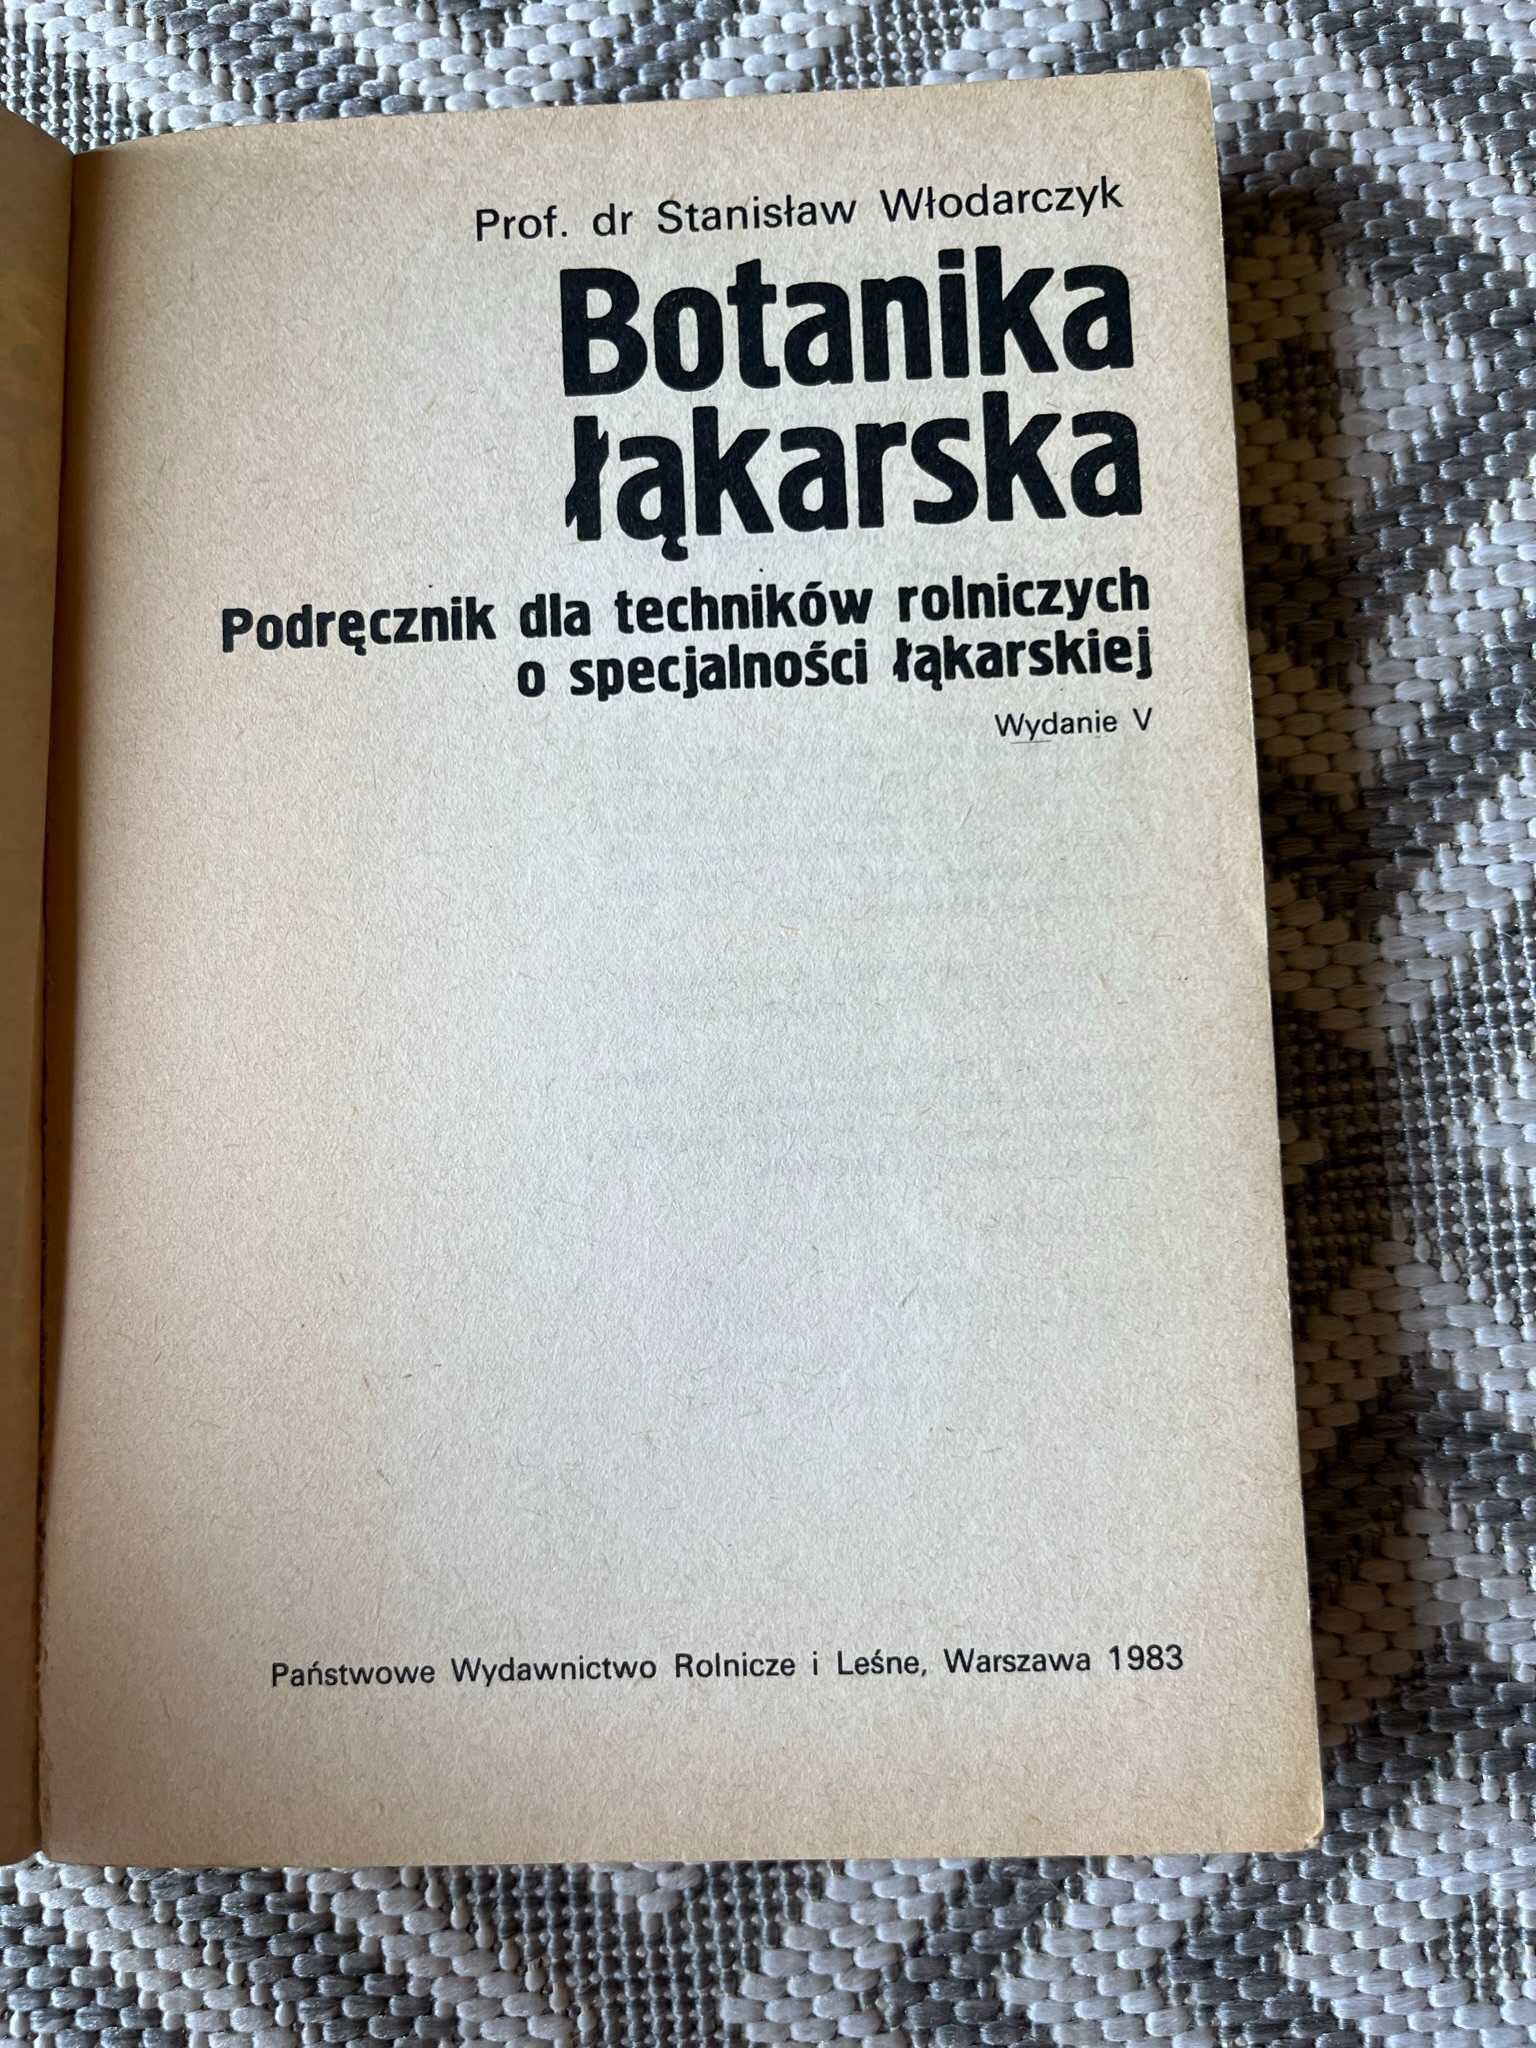 S. Włodarczyk "Botanika łąkarska"